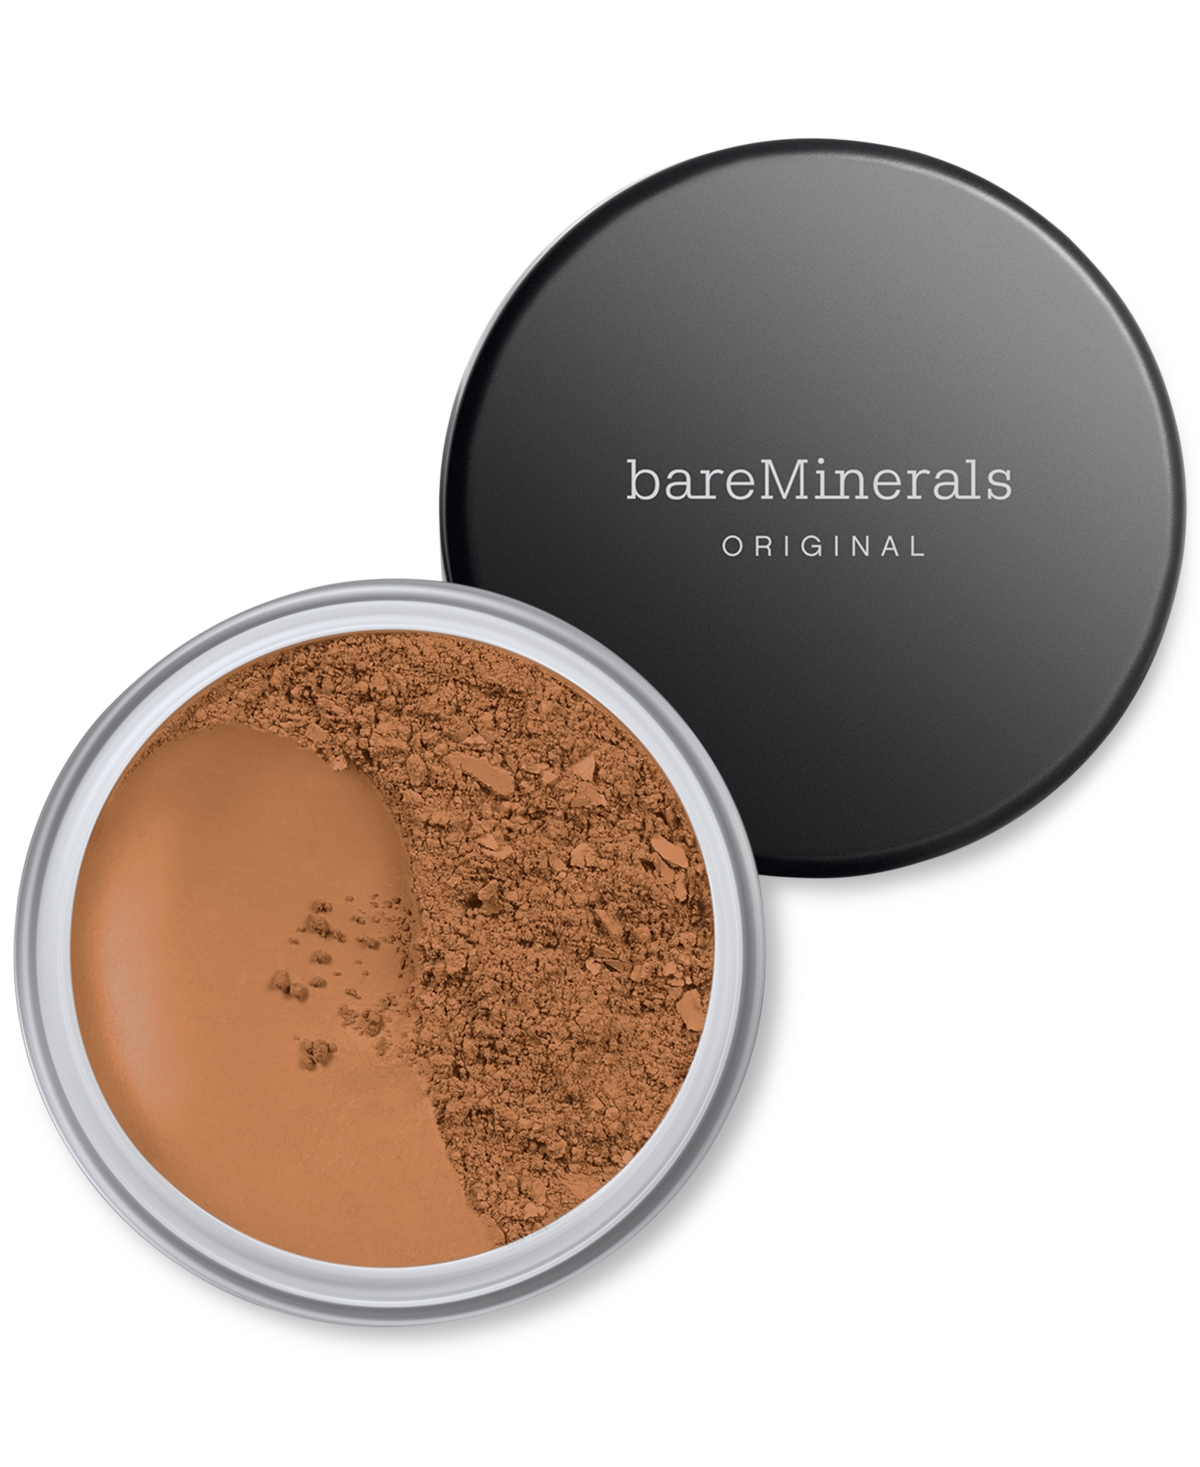 Bareminerals Original Loose Powder Foundation Spf 15 In Golden Deep  - For Dark Skin With Neutra